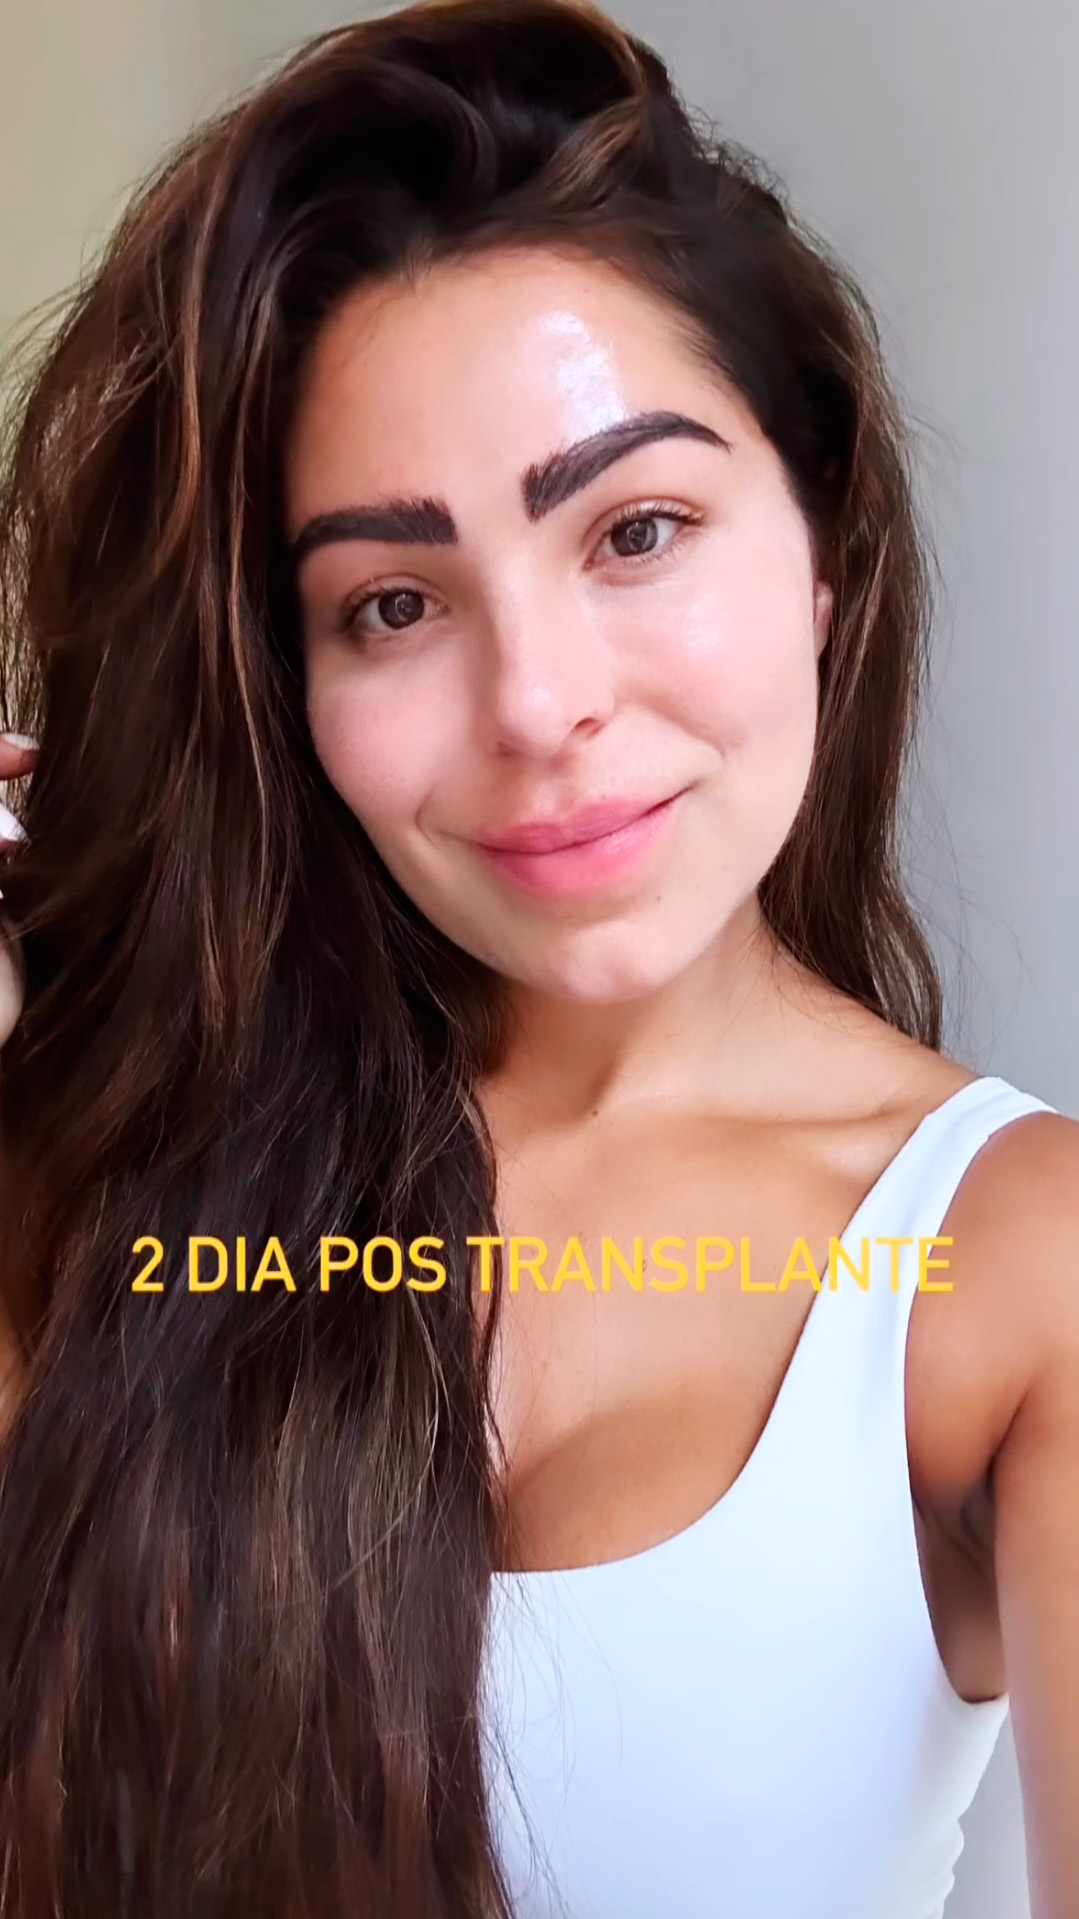 Andressa Ferreira mostrou resultado de transplante de sobrancelhas - Foto: Reprodução/ @andressaferreiramiranda